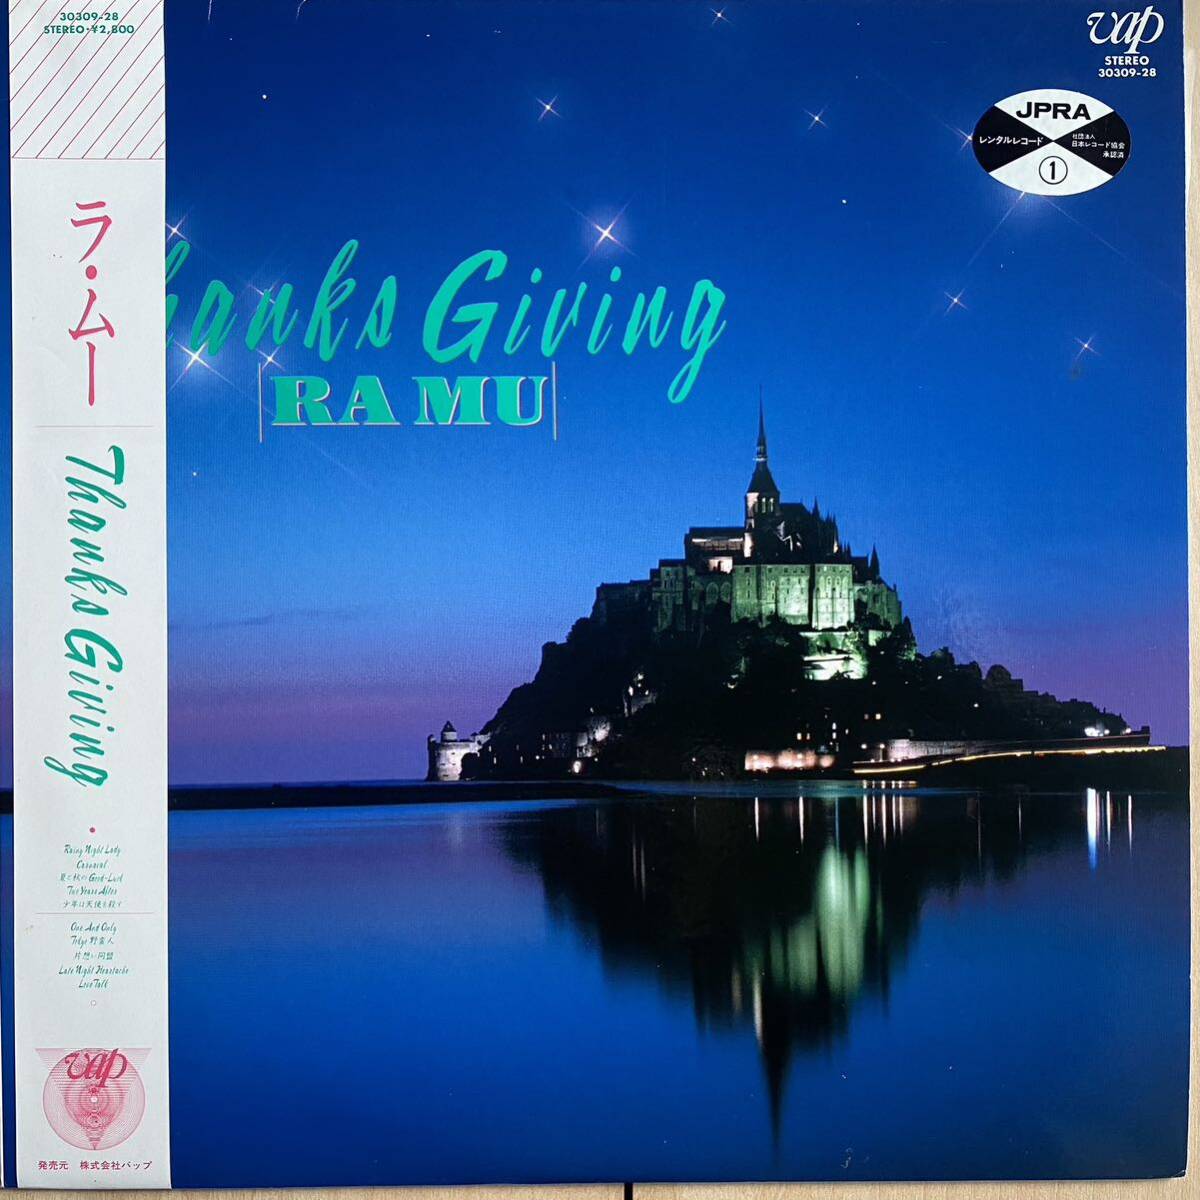 帯付LP オリジナル '88盤 RA MU ラ・ムー / 菊池桃子 THANKS GIVING 30309-28 和ブギー JAPANESE CITY POP 美盤 BOOGIE_画像1